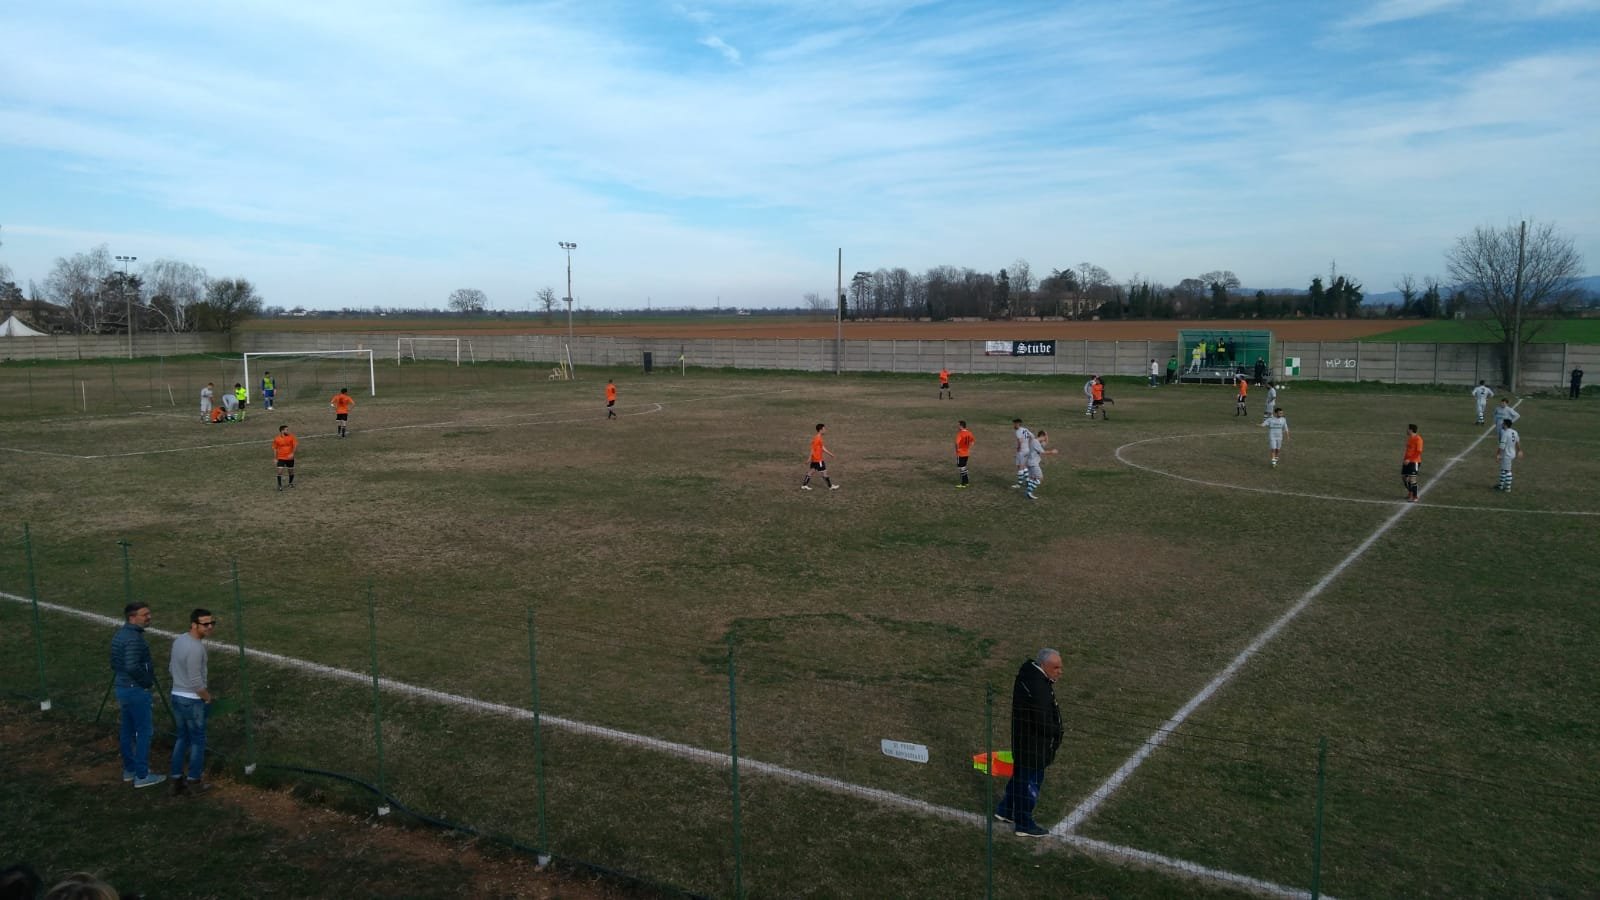 Calcio: i risultati finali delle squadre della provincia di Alessandria dalla Serie C alla Prima Categoria